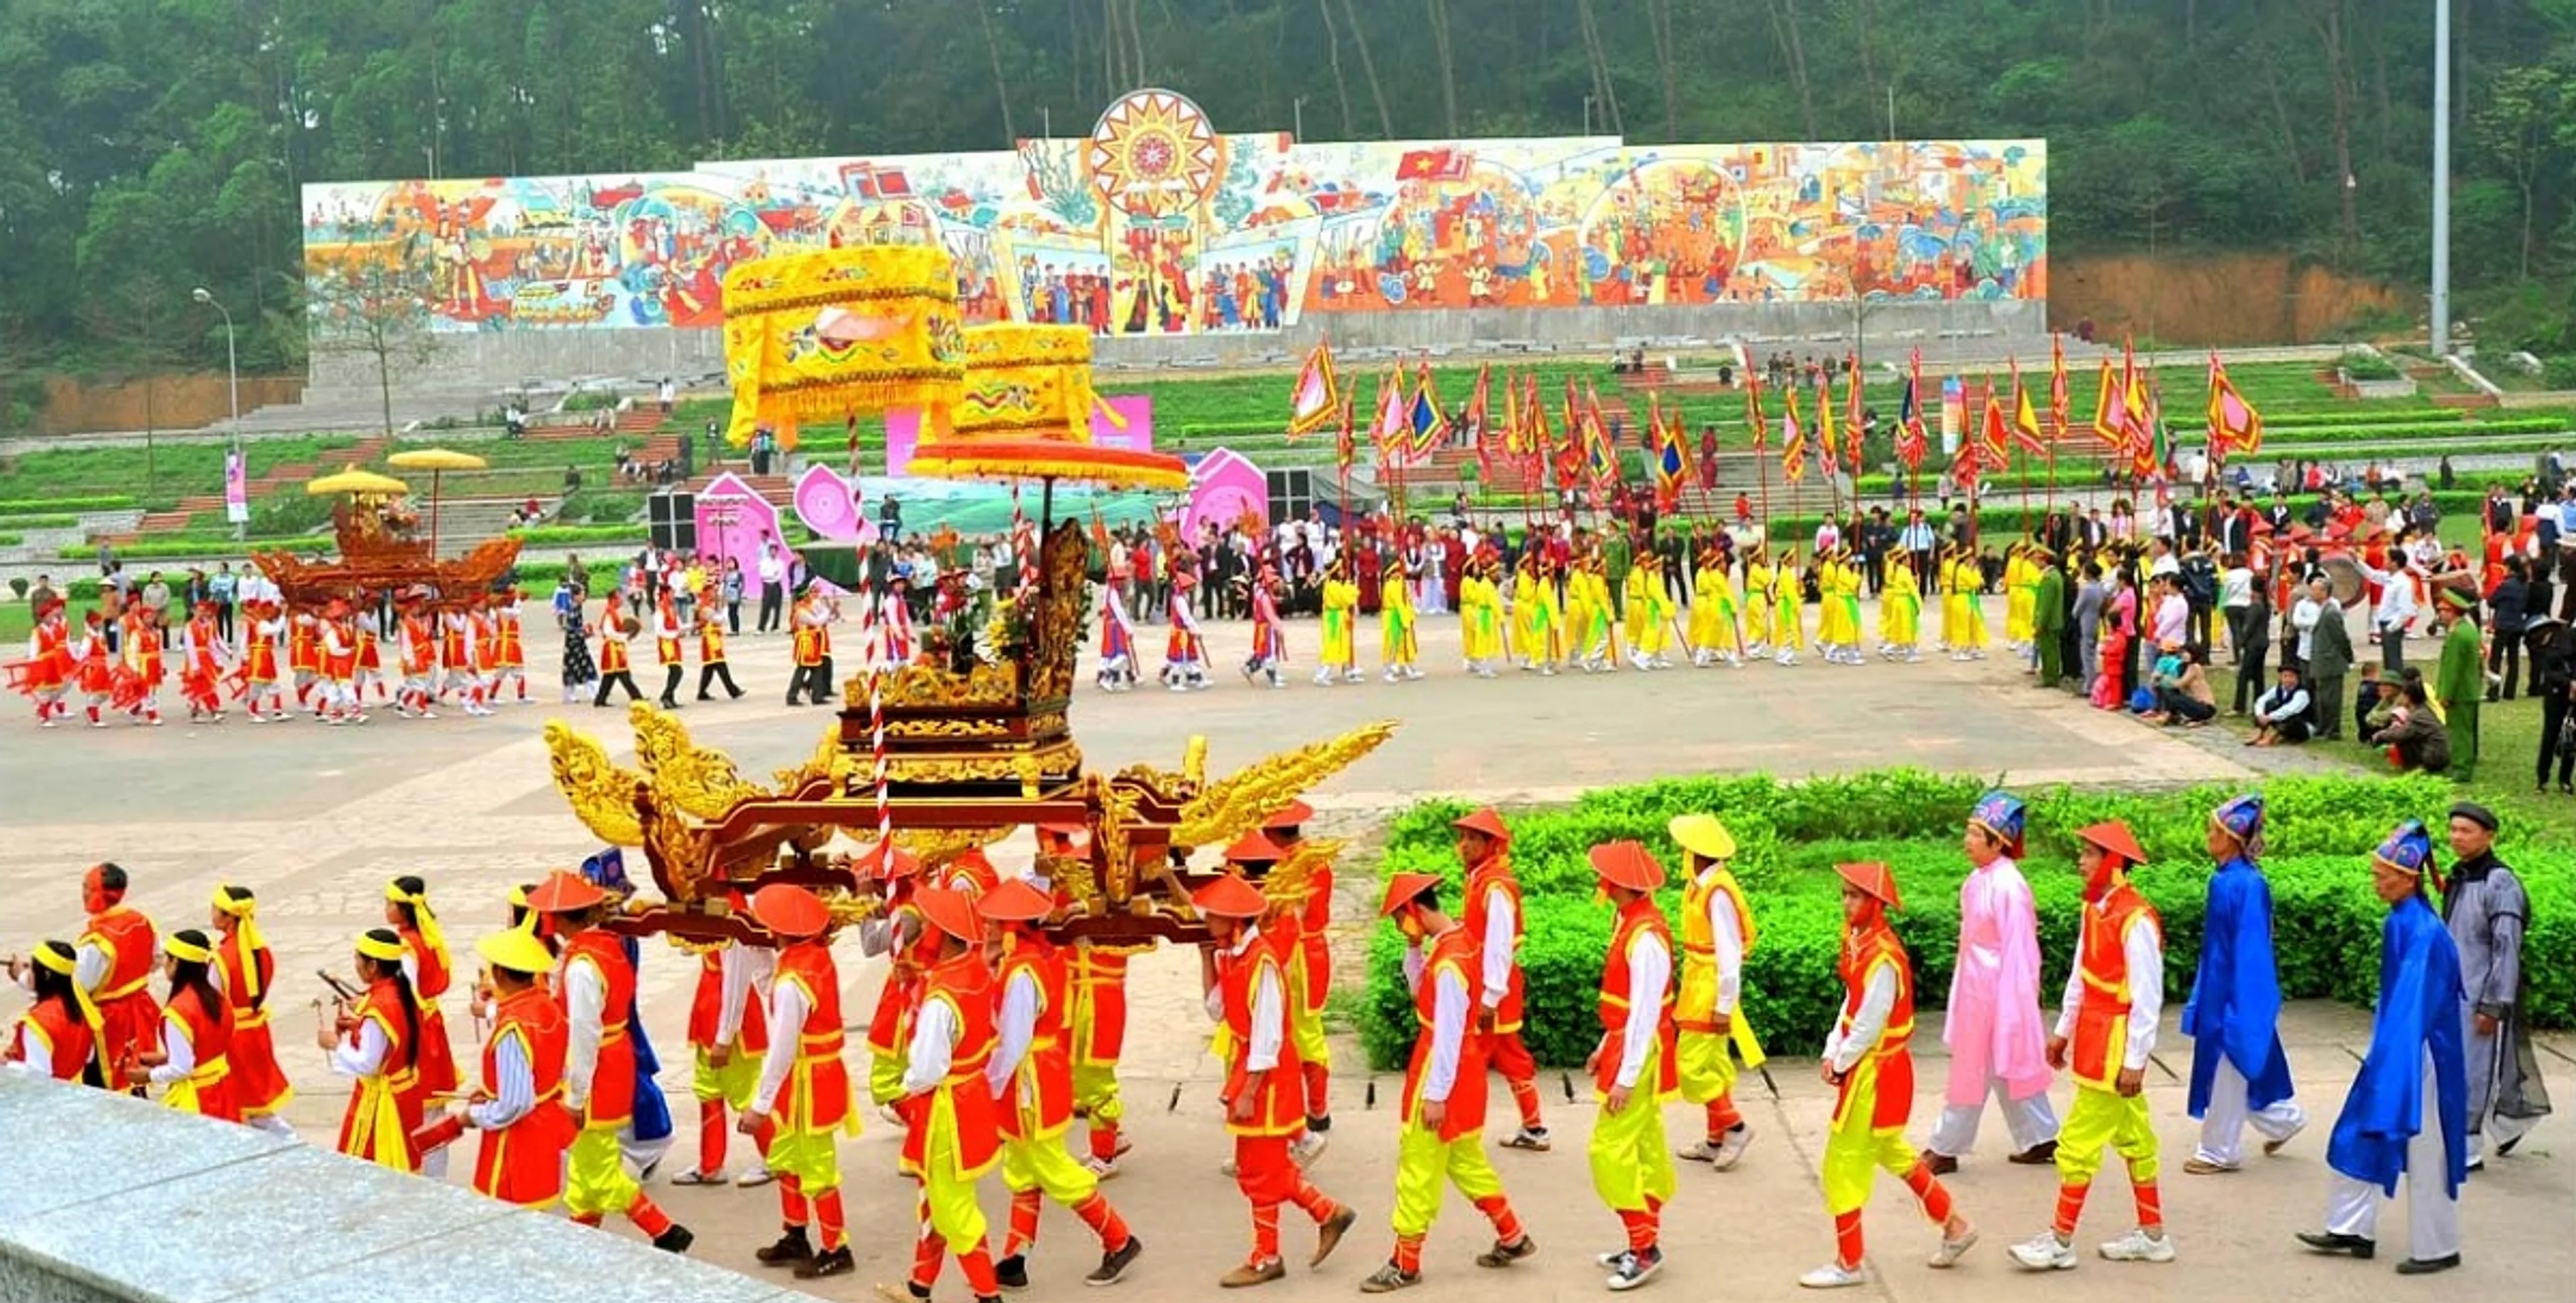 Lễ hội Đền Hùng Phú Thọ - Lễ hội bản sắc dân tộc Việt Nam